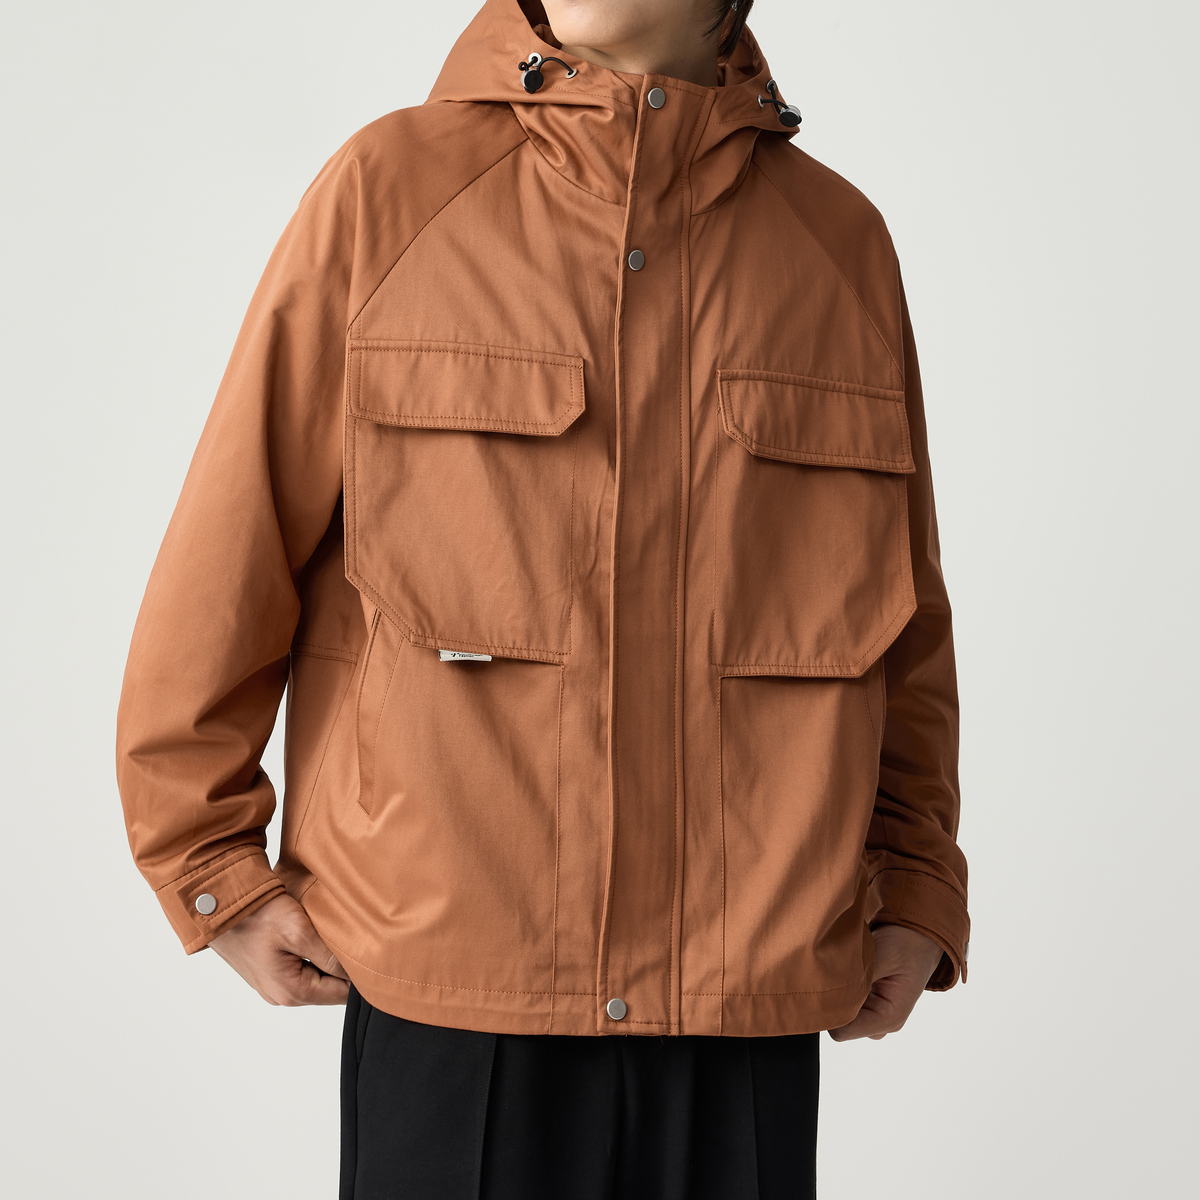 墨麦客男装 斜纹秋季新款连帽夹克男士户外工装外套潮80882。